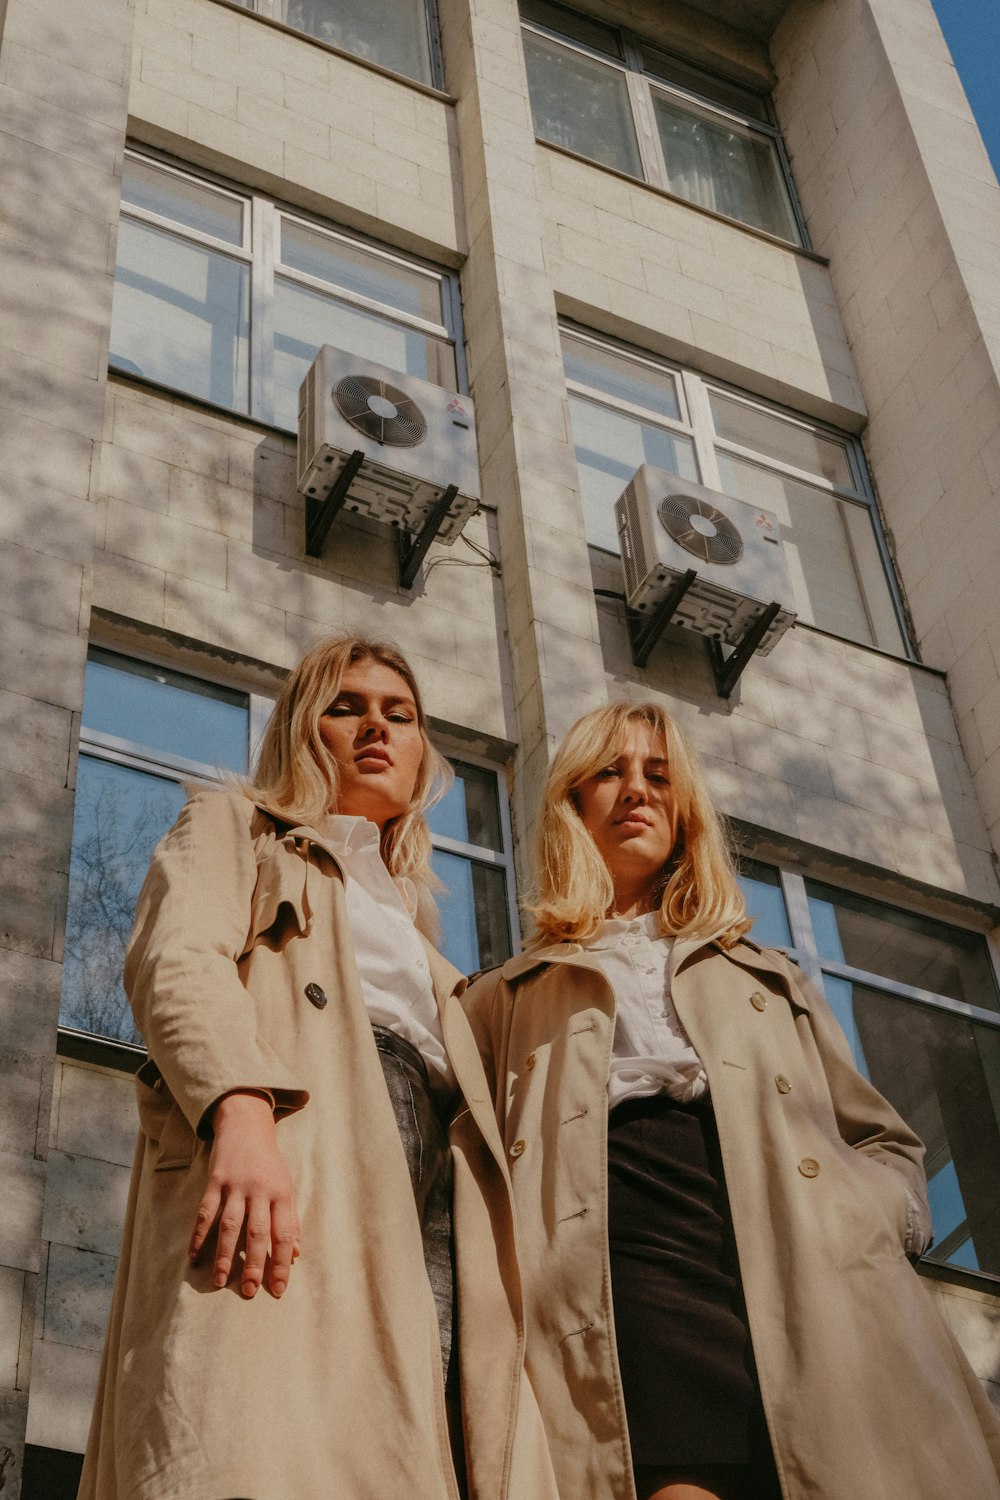 two women wear overcoats outside the building